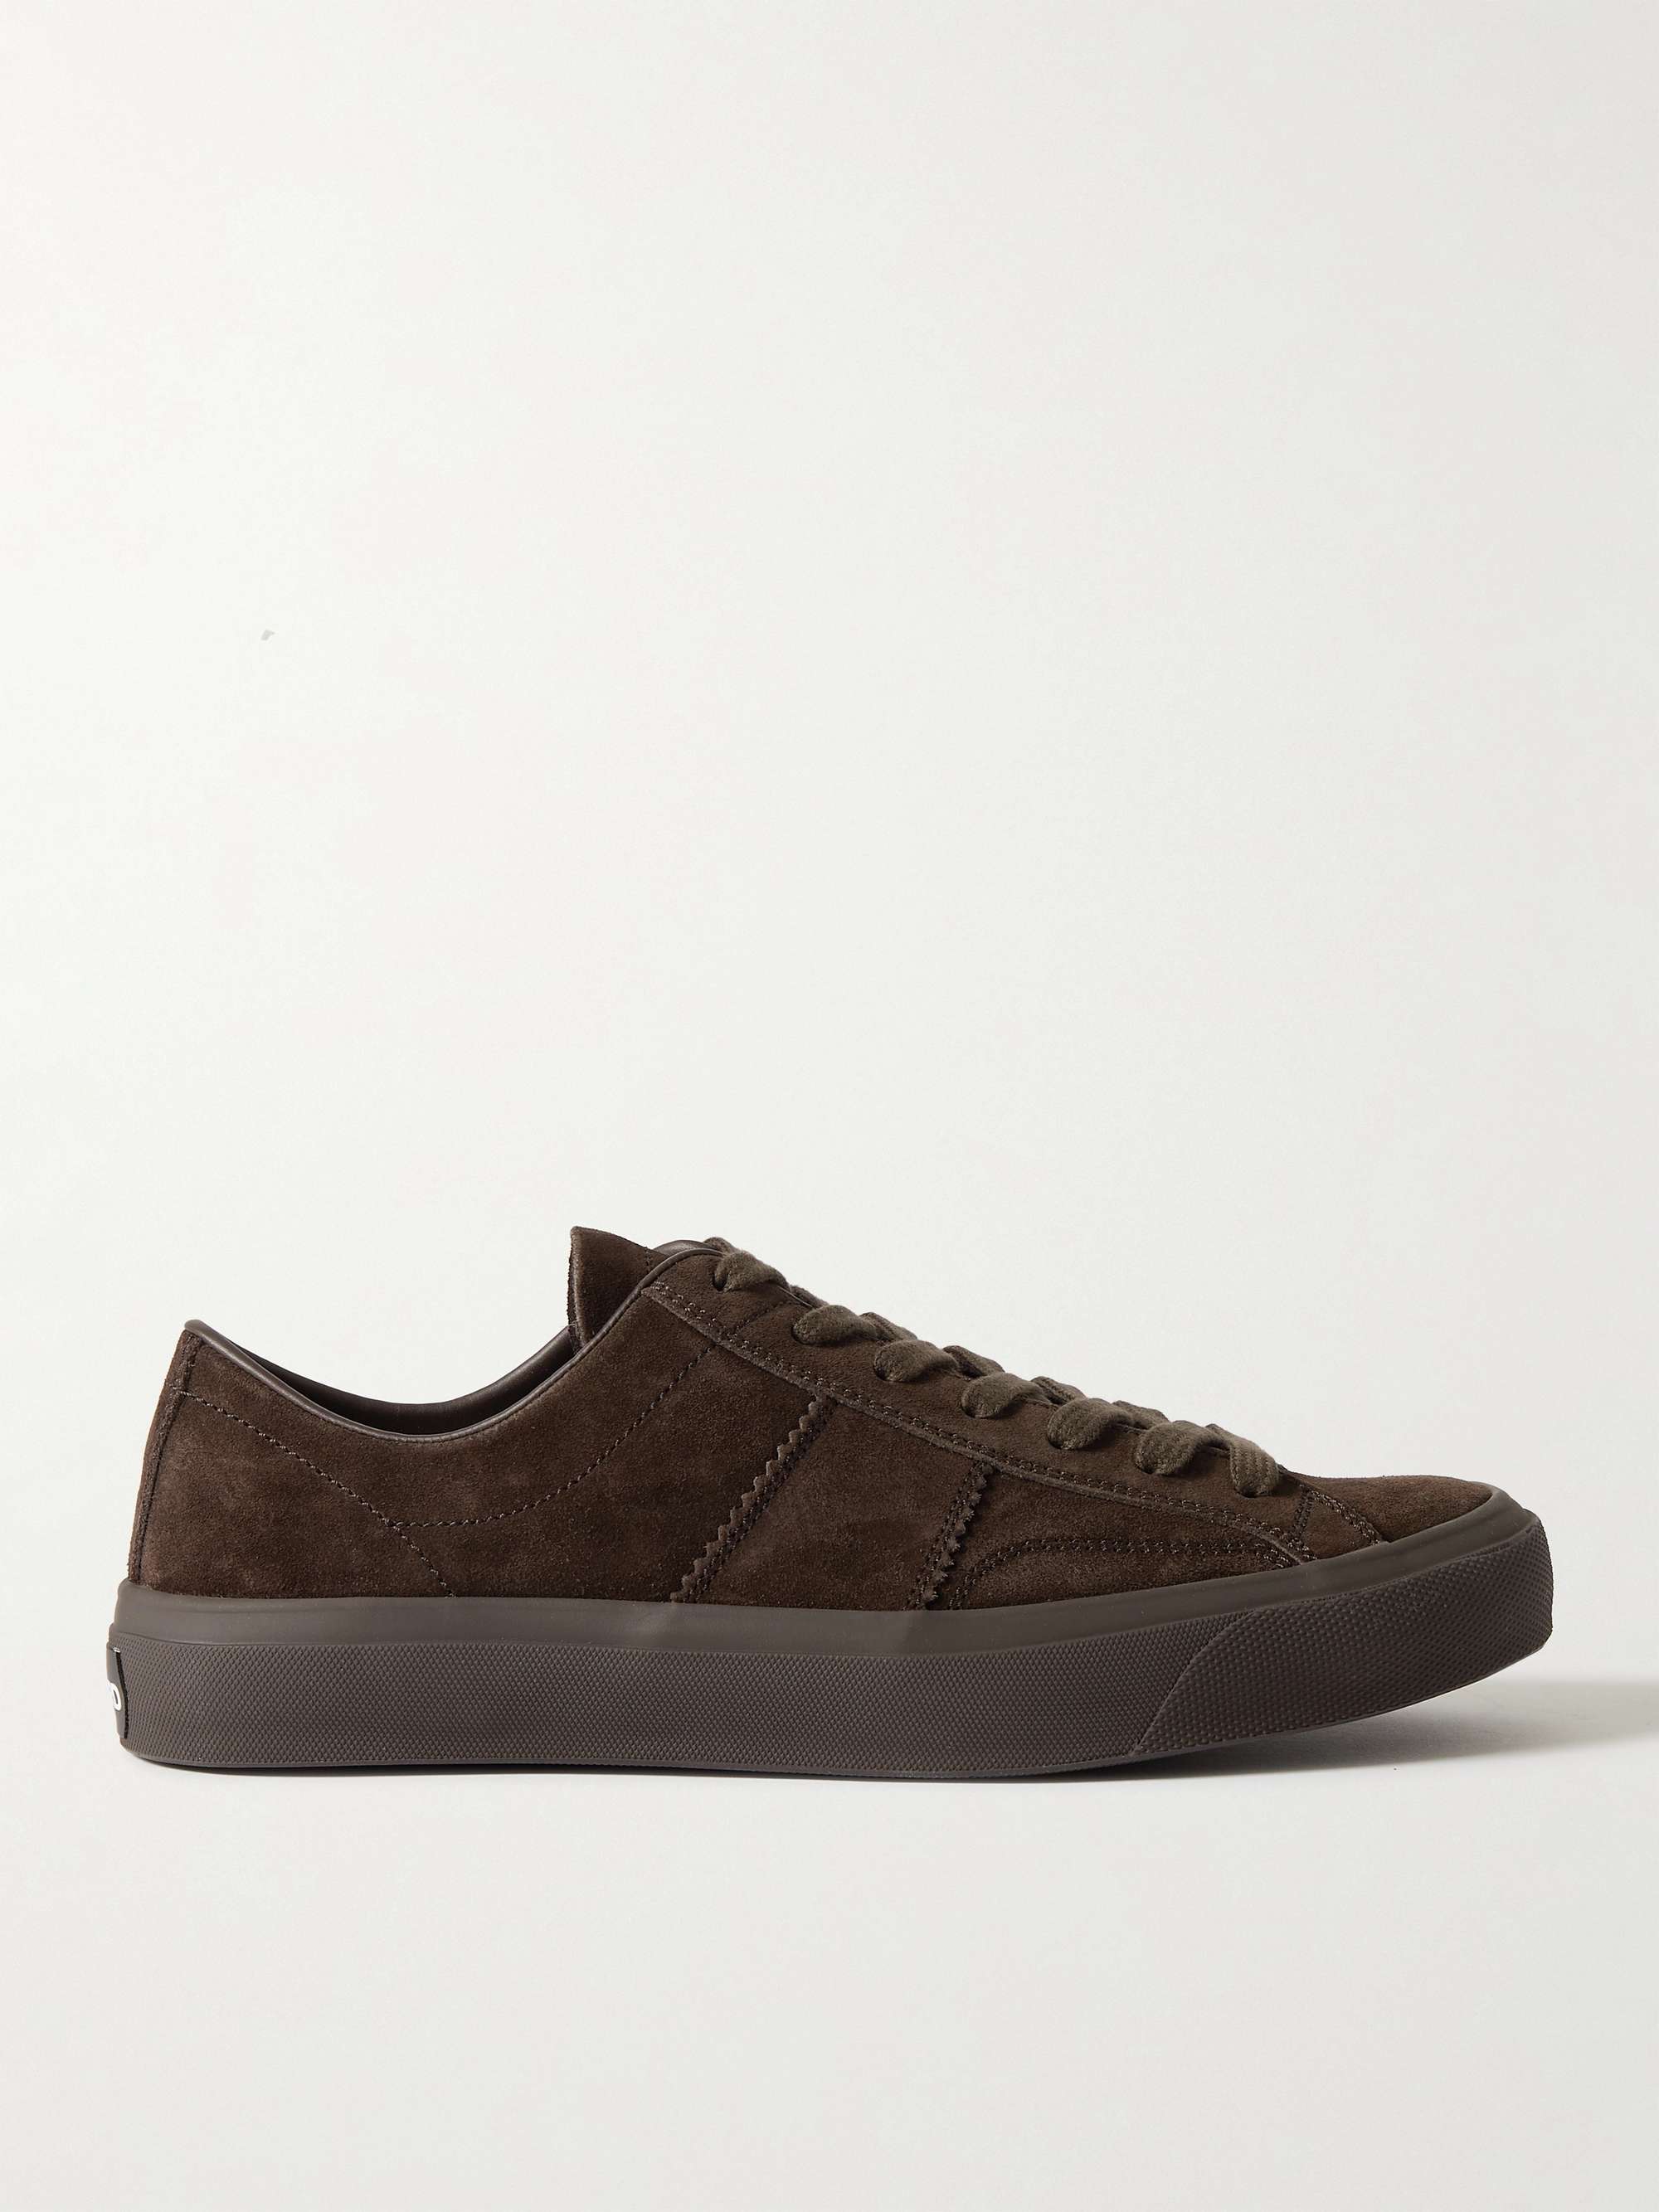 톰포드 스니커즈 Tom Ford Cambridge Suede Sneakers,Dark brown